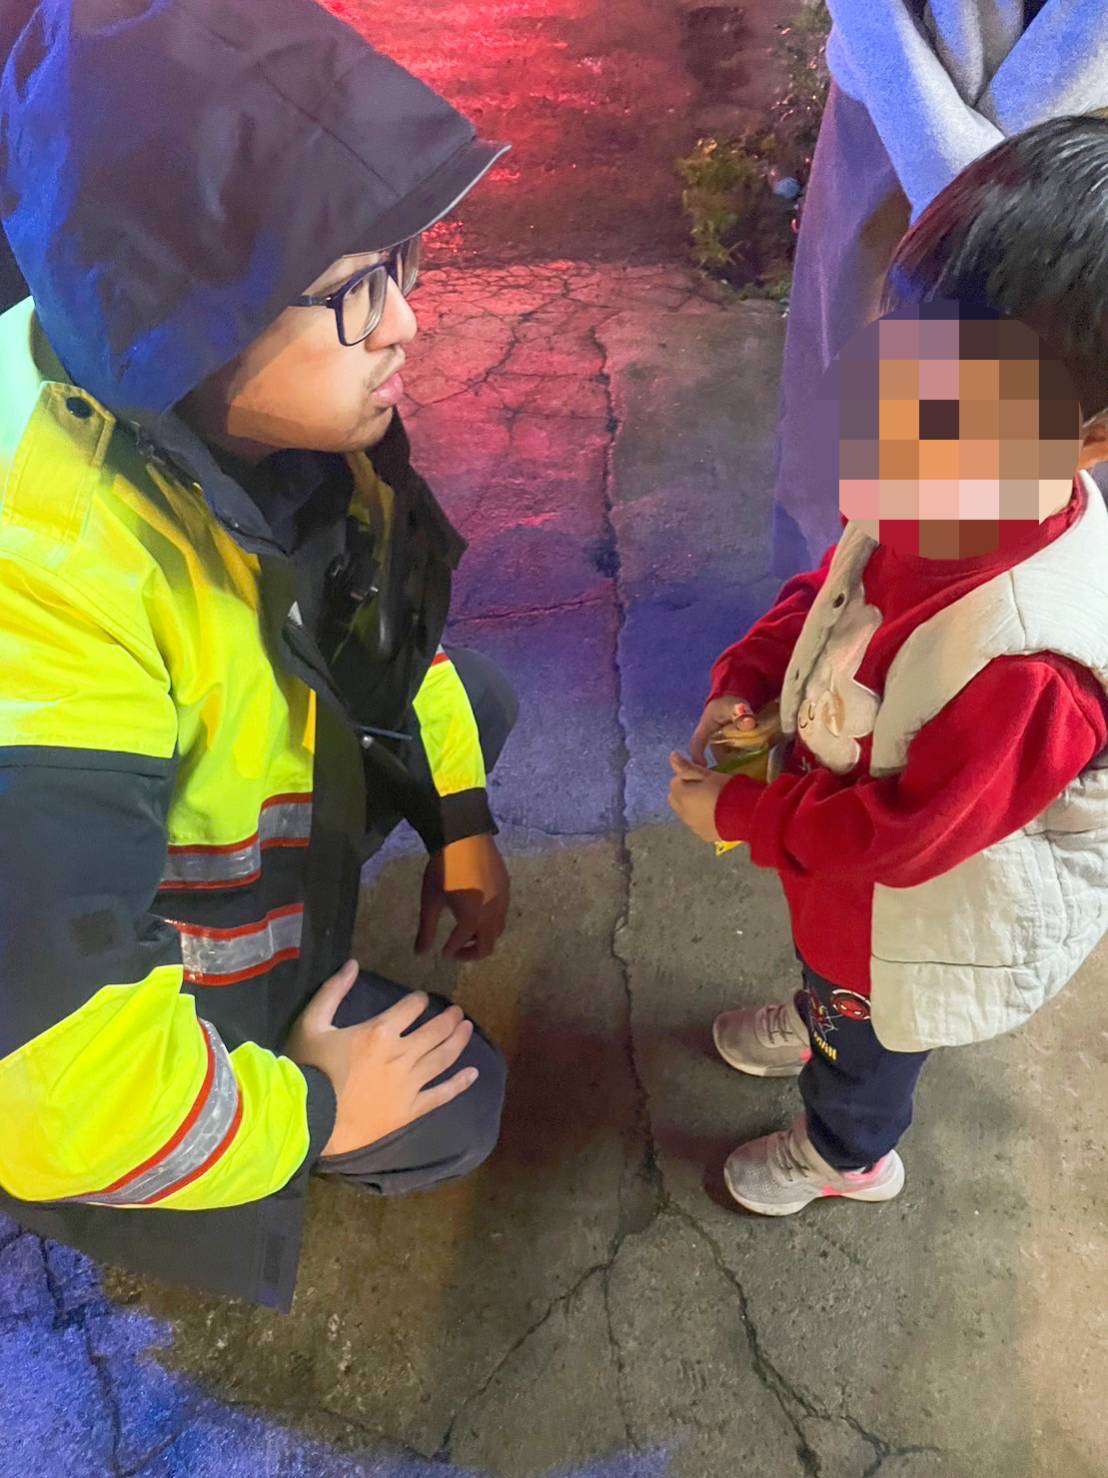 男童雨中徘徊眼眶泛淚 大園警助母子團圓 - 早安台灣新聞 | Morning Taiwan News